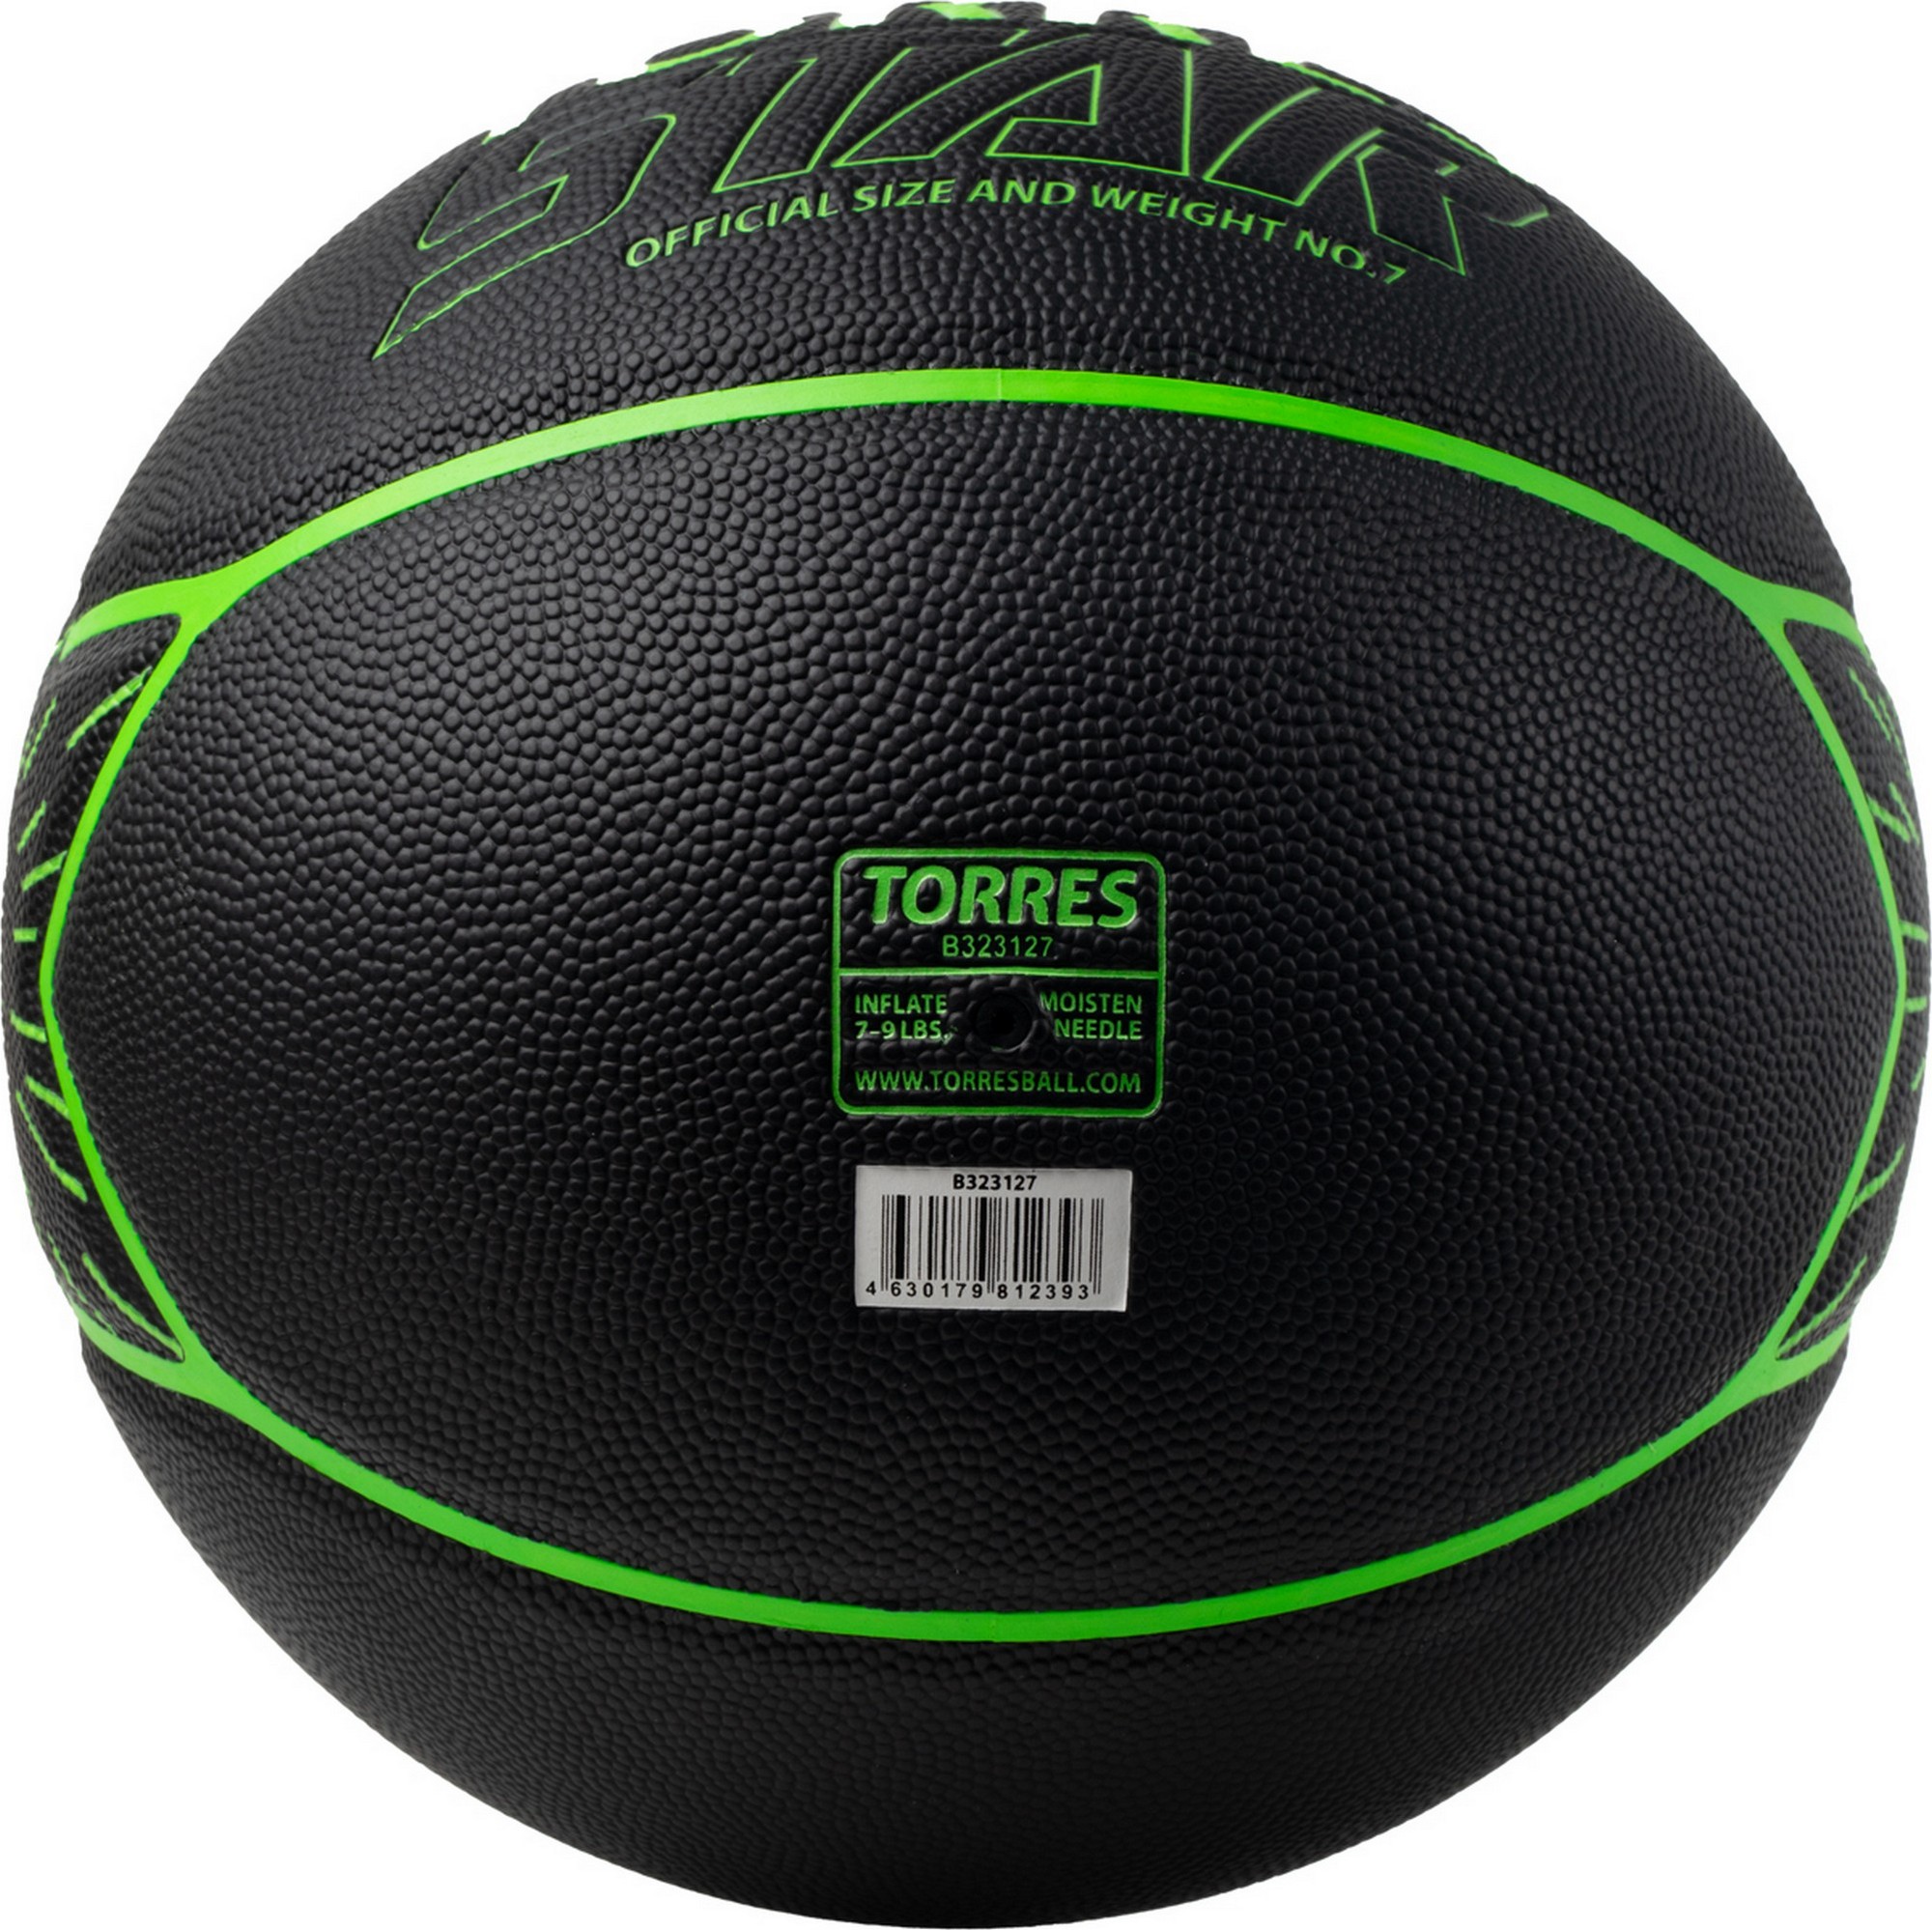 Мяч баскетбольный Torres Star B323127 р.7 2000_1998